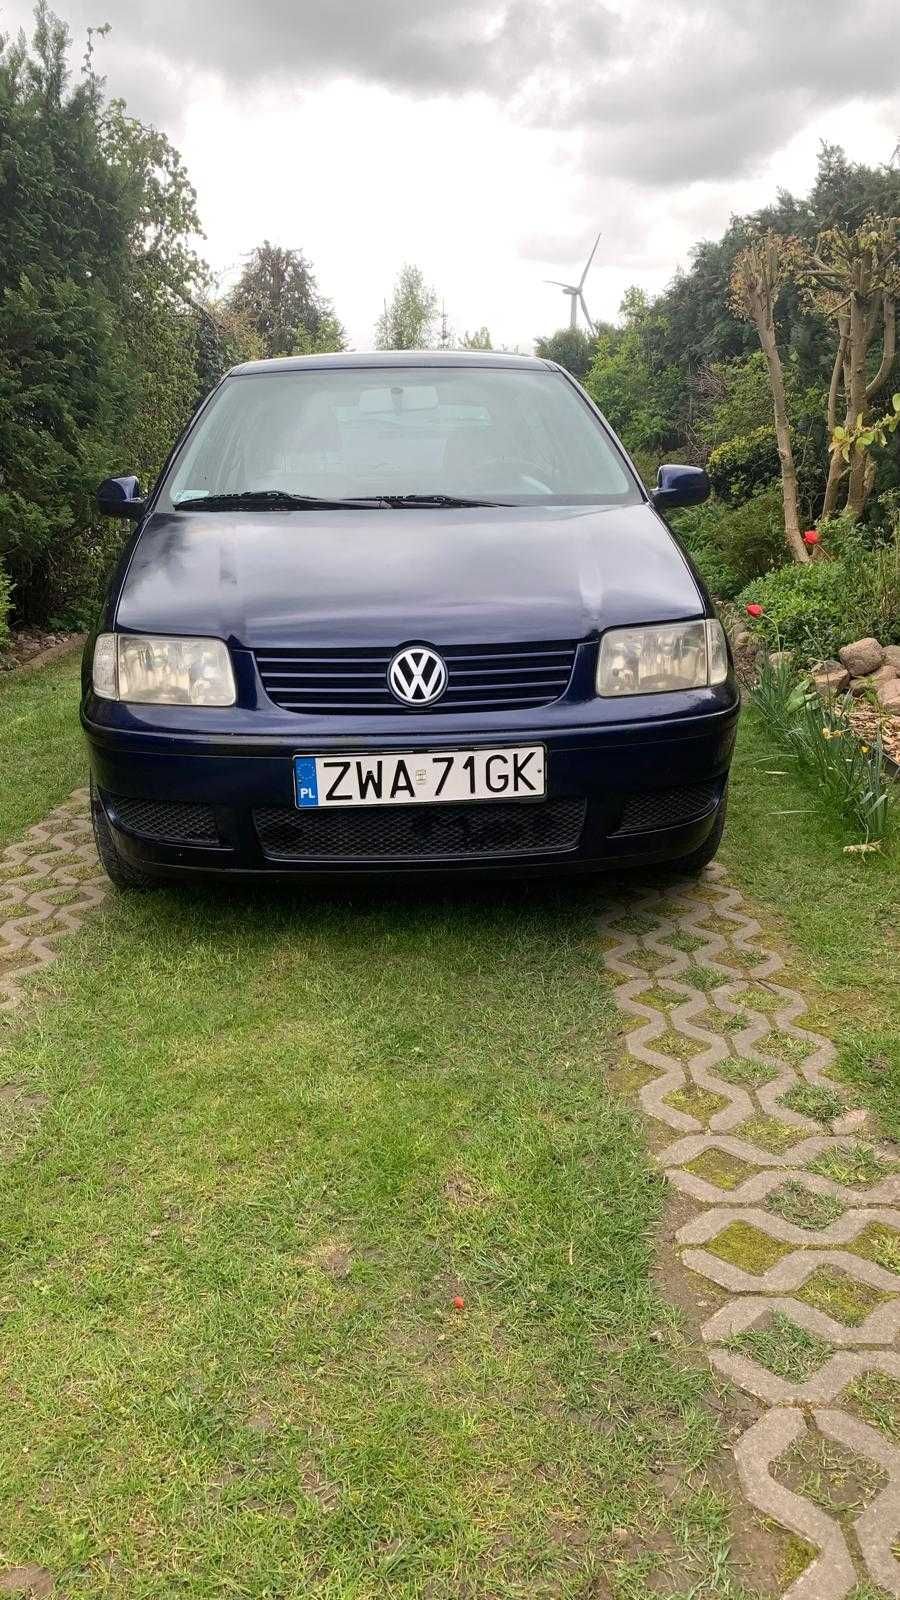 Sprzedam !!! Volkswagen Polo 1,4 TDI , Rok 2000